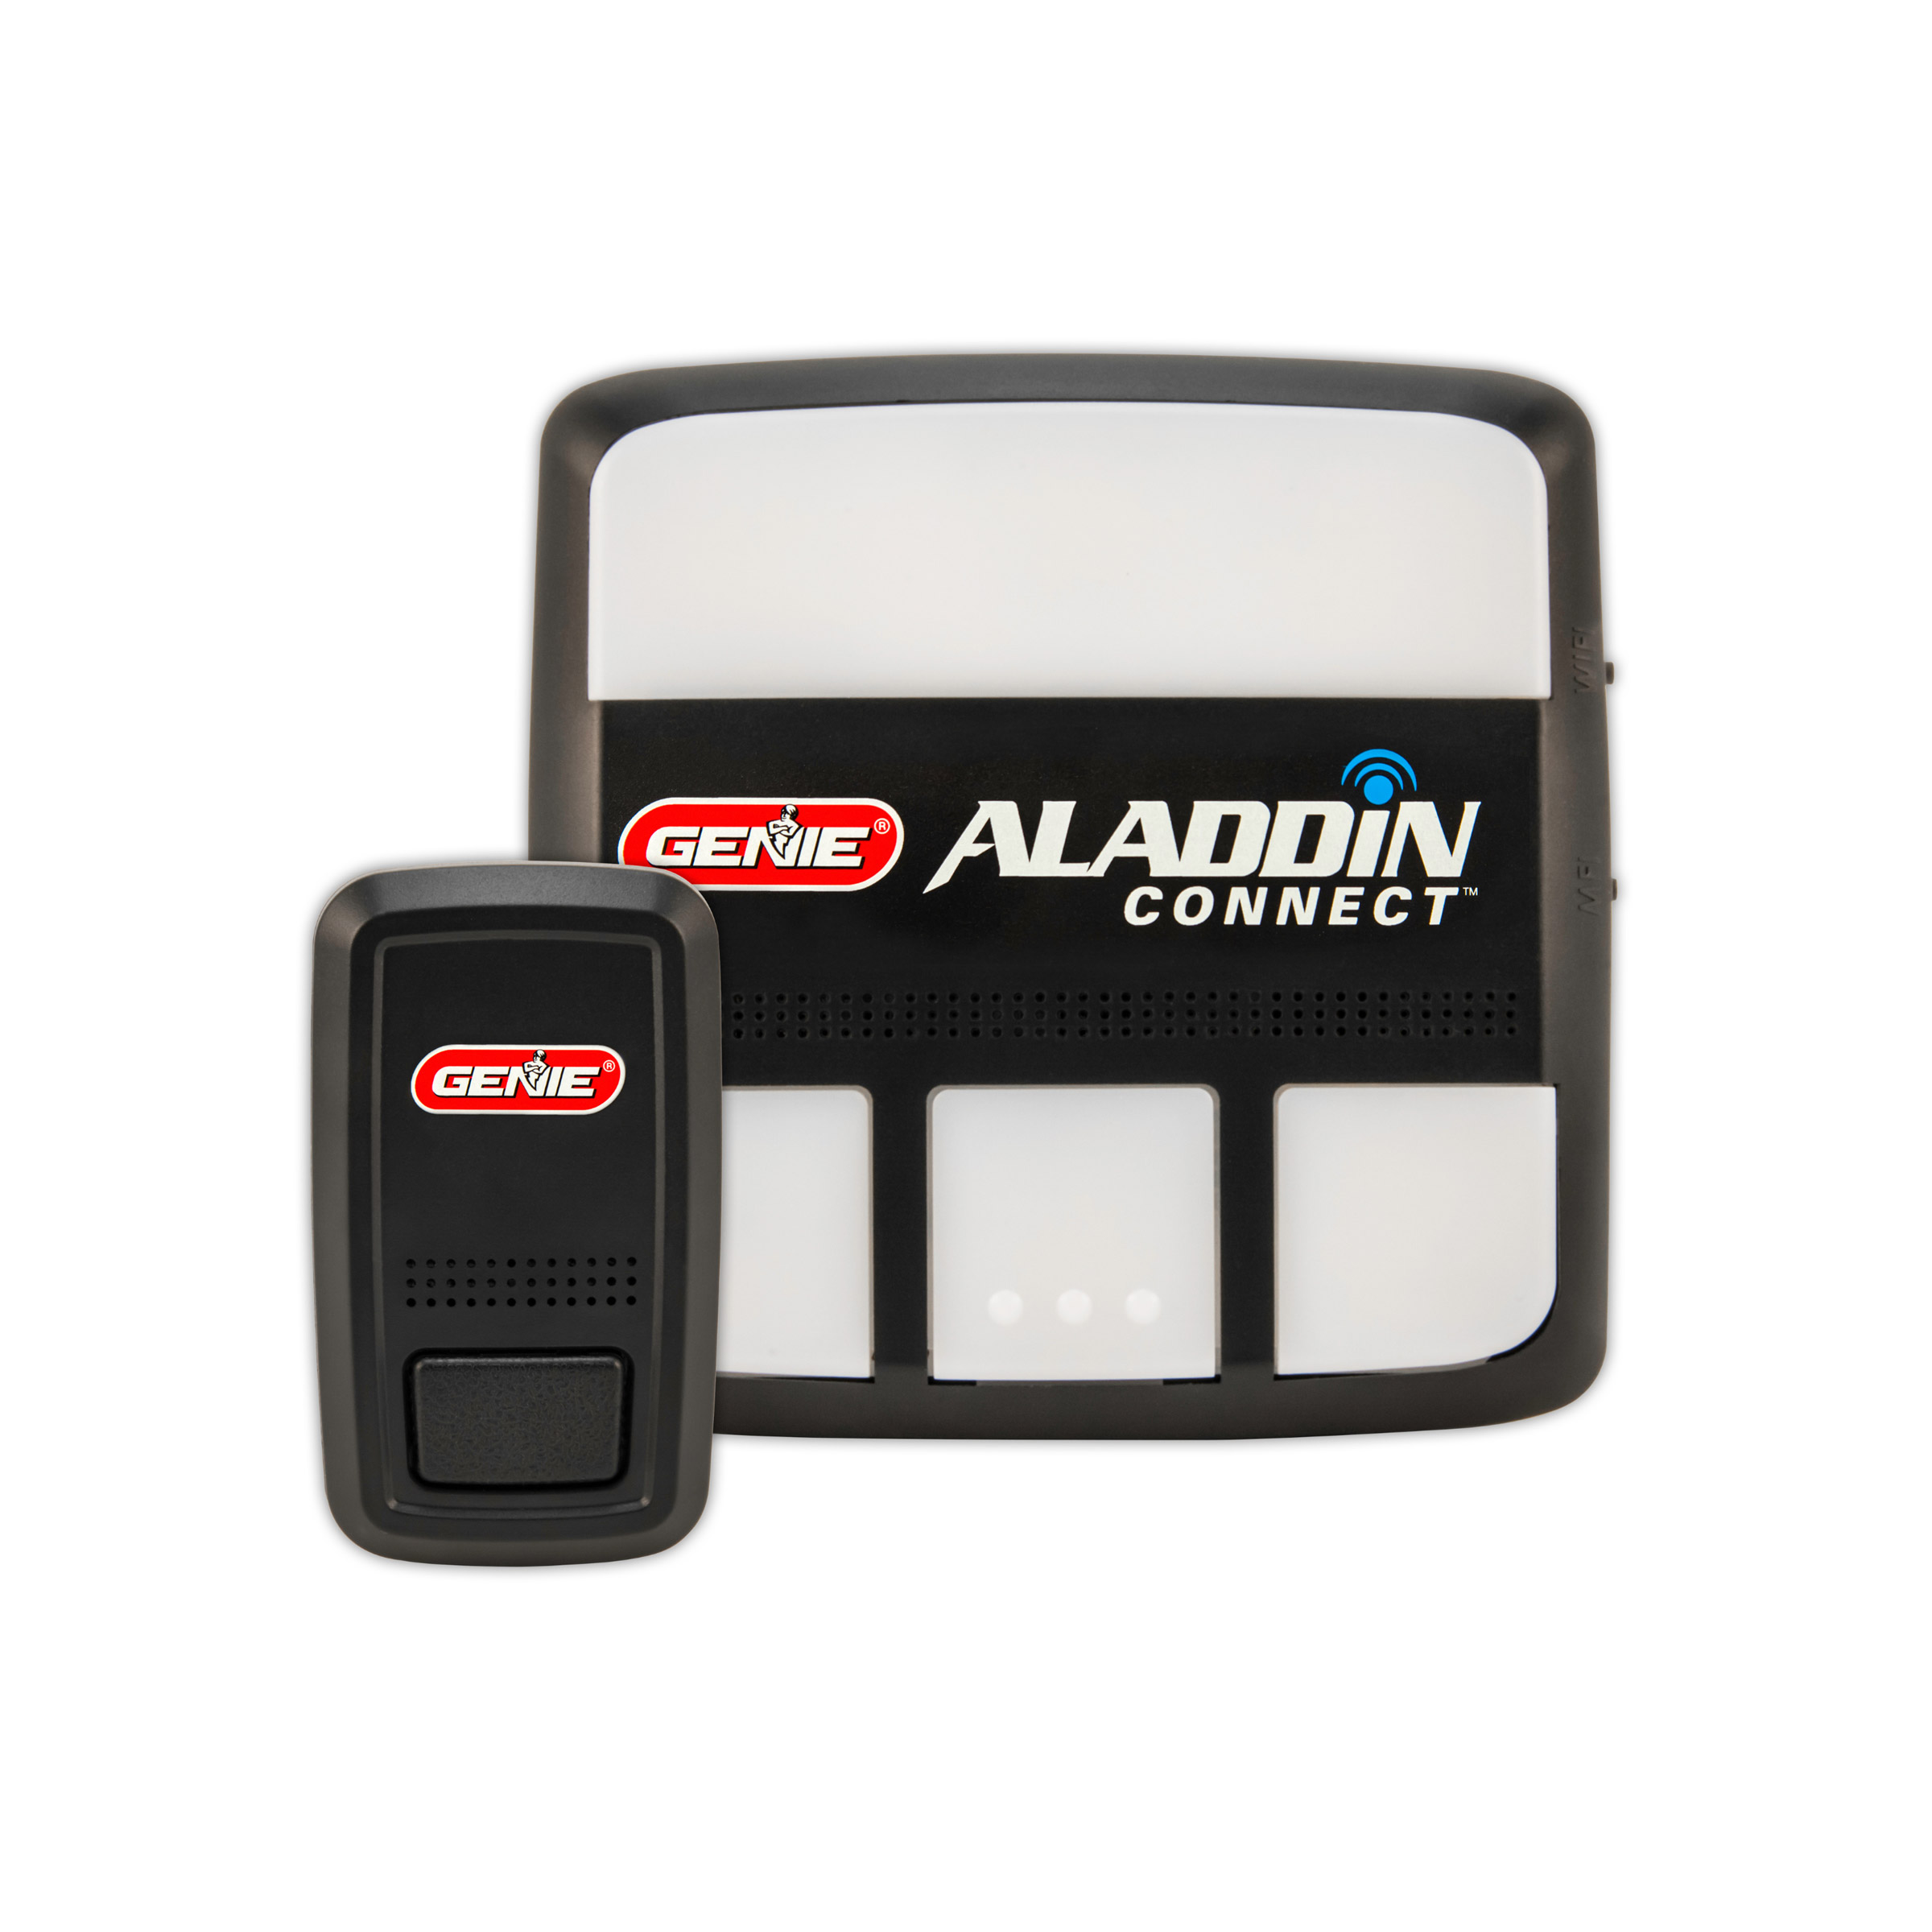 aladdin wifi connected garage door